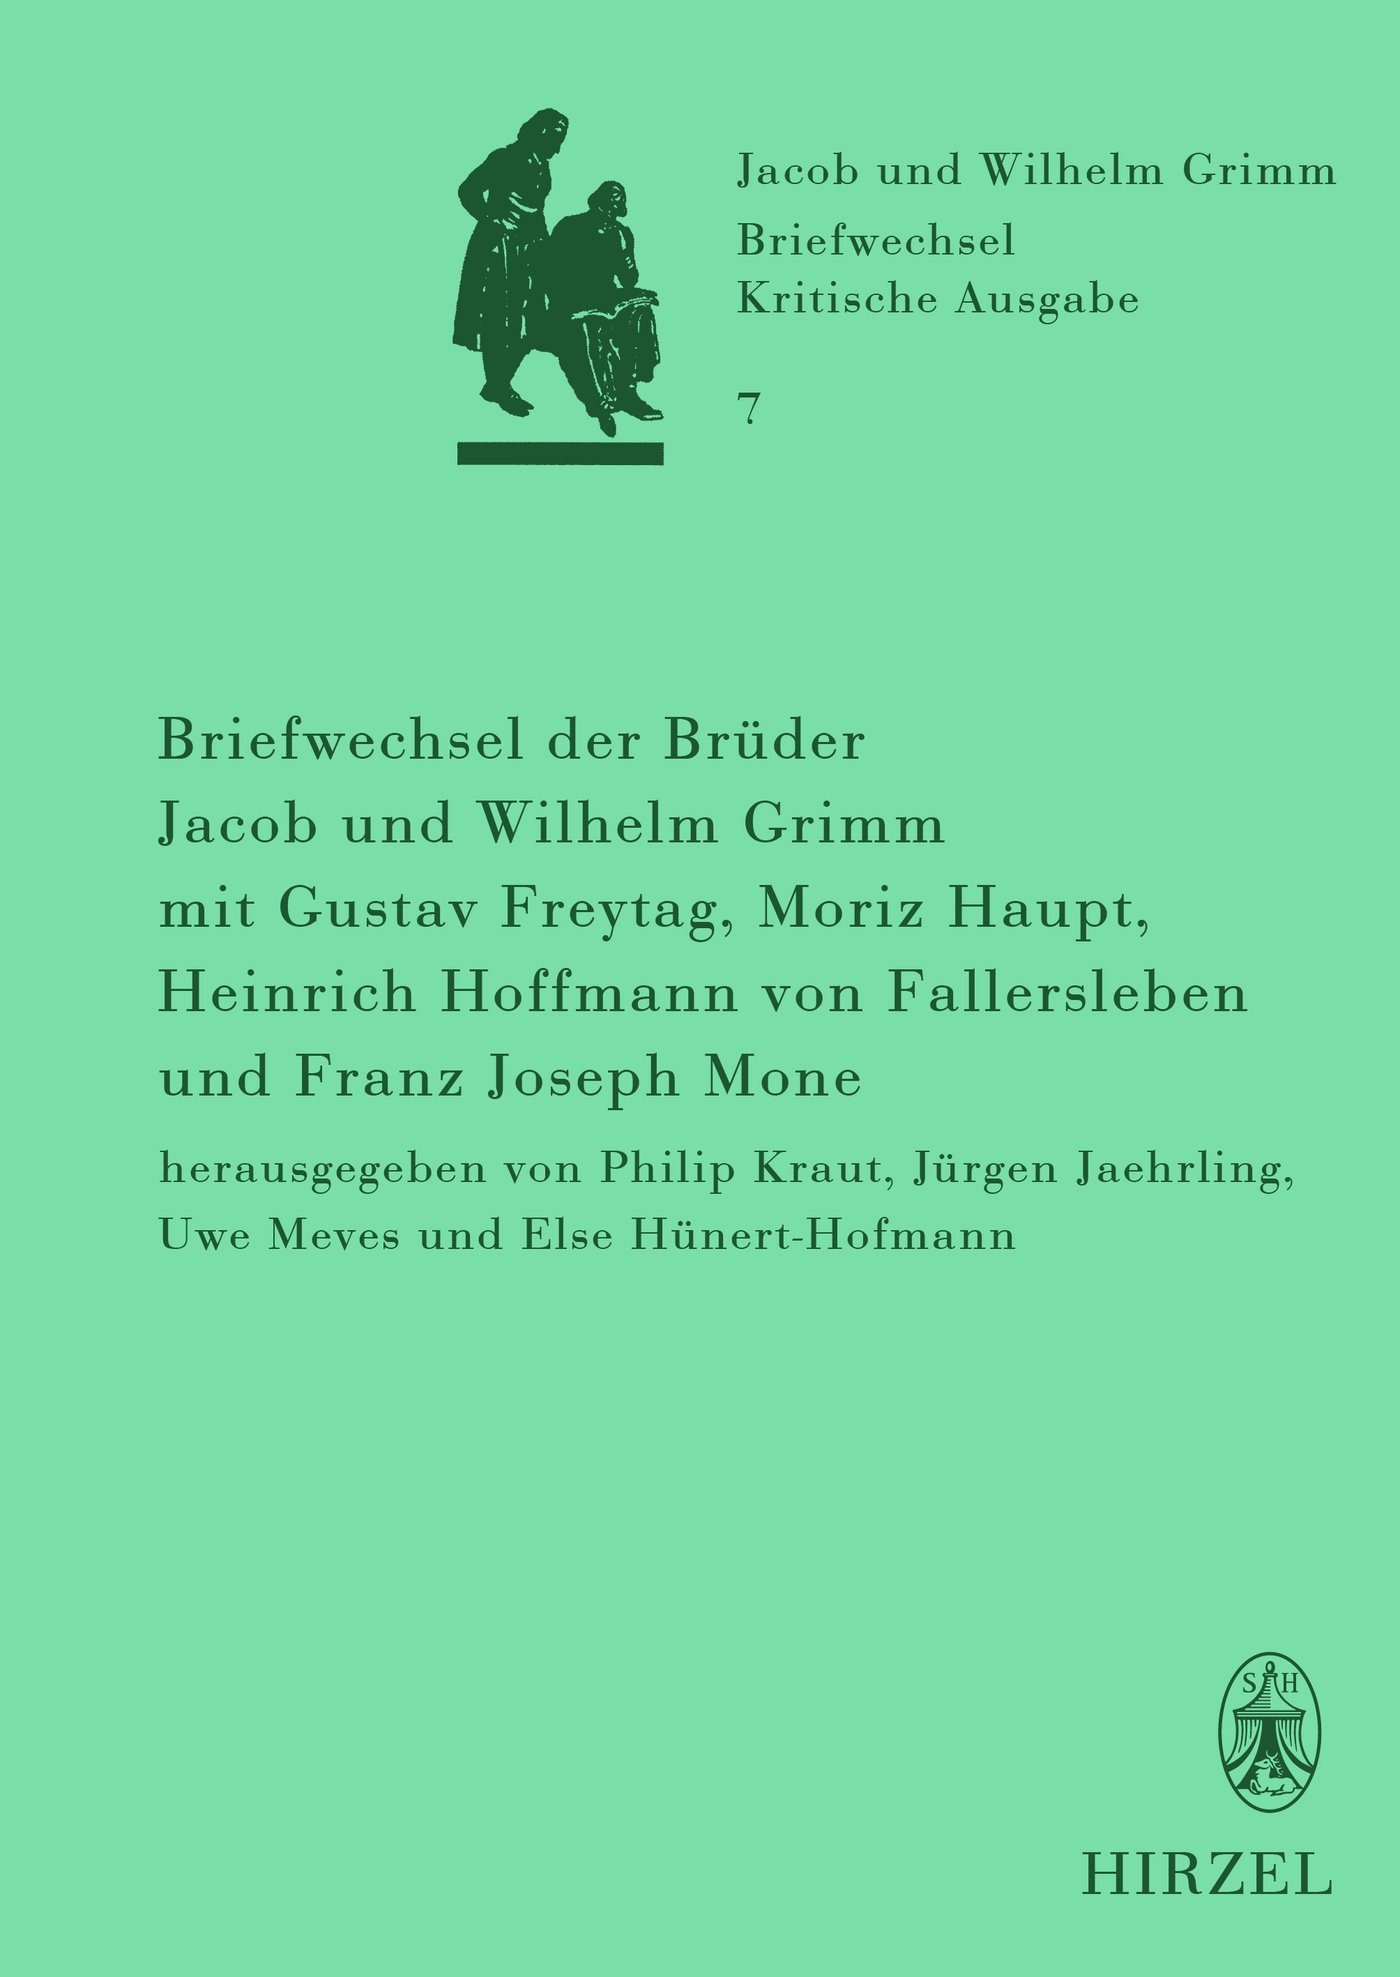 Briefwechsel der Brüder Jacob und Wilhelm Grimm mit Gustav Freytag, Moriz Haupt, Heinrich Hoffmann von Fallersleben und Franz Joseph Mone